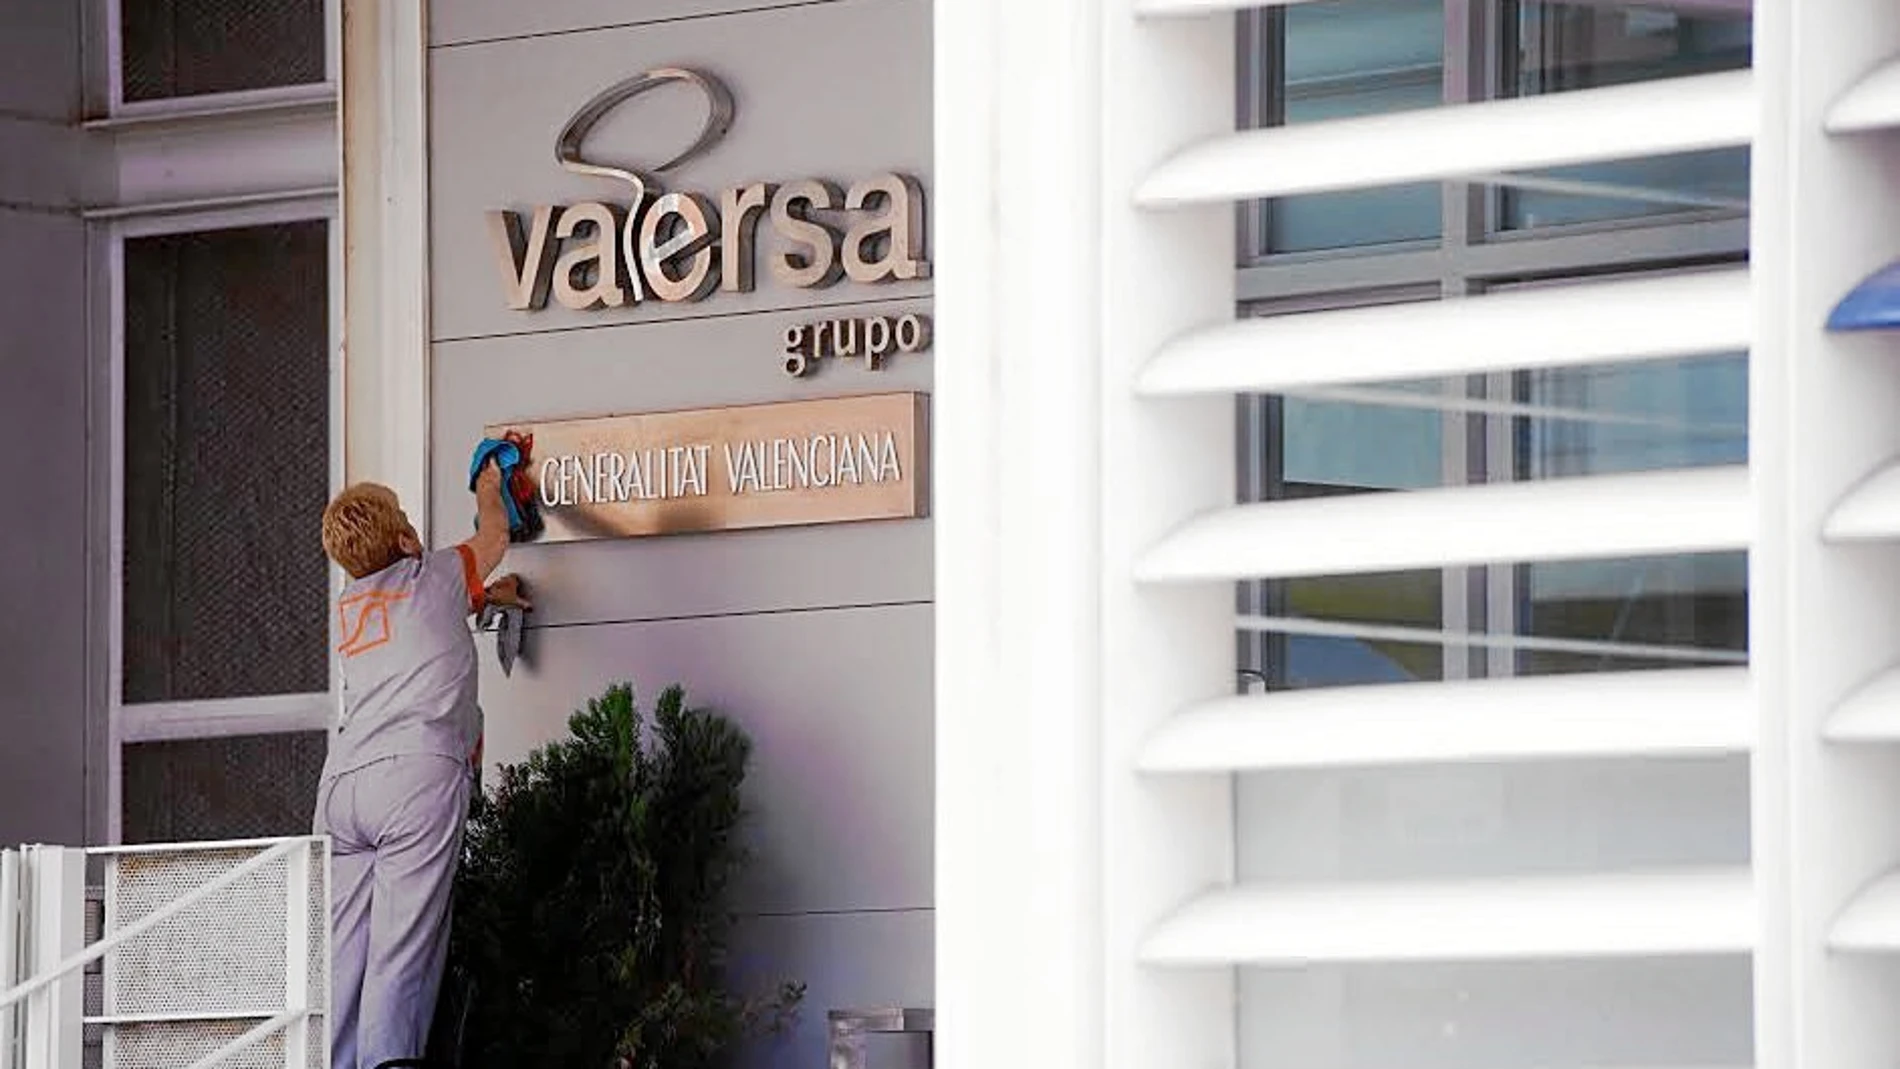 Vaersa es una de las empresas que quedaron incluidas en la reestructuración del sector público valenciano